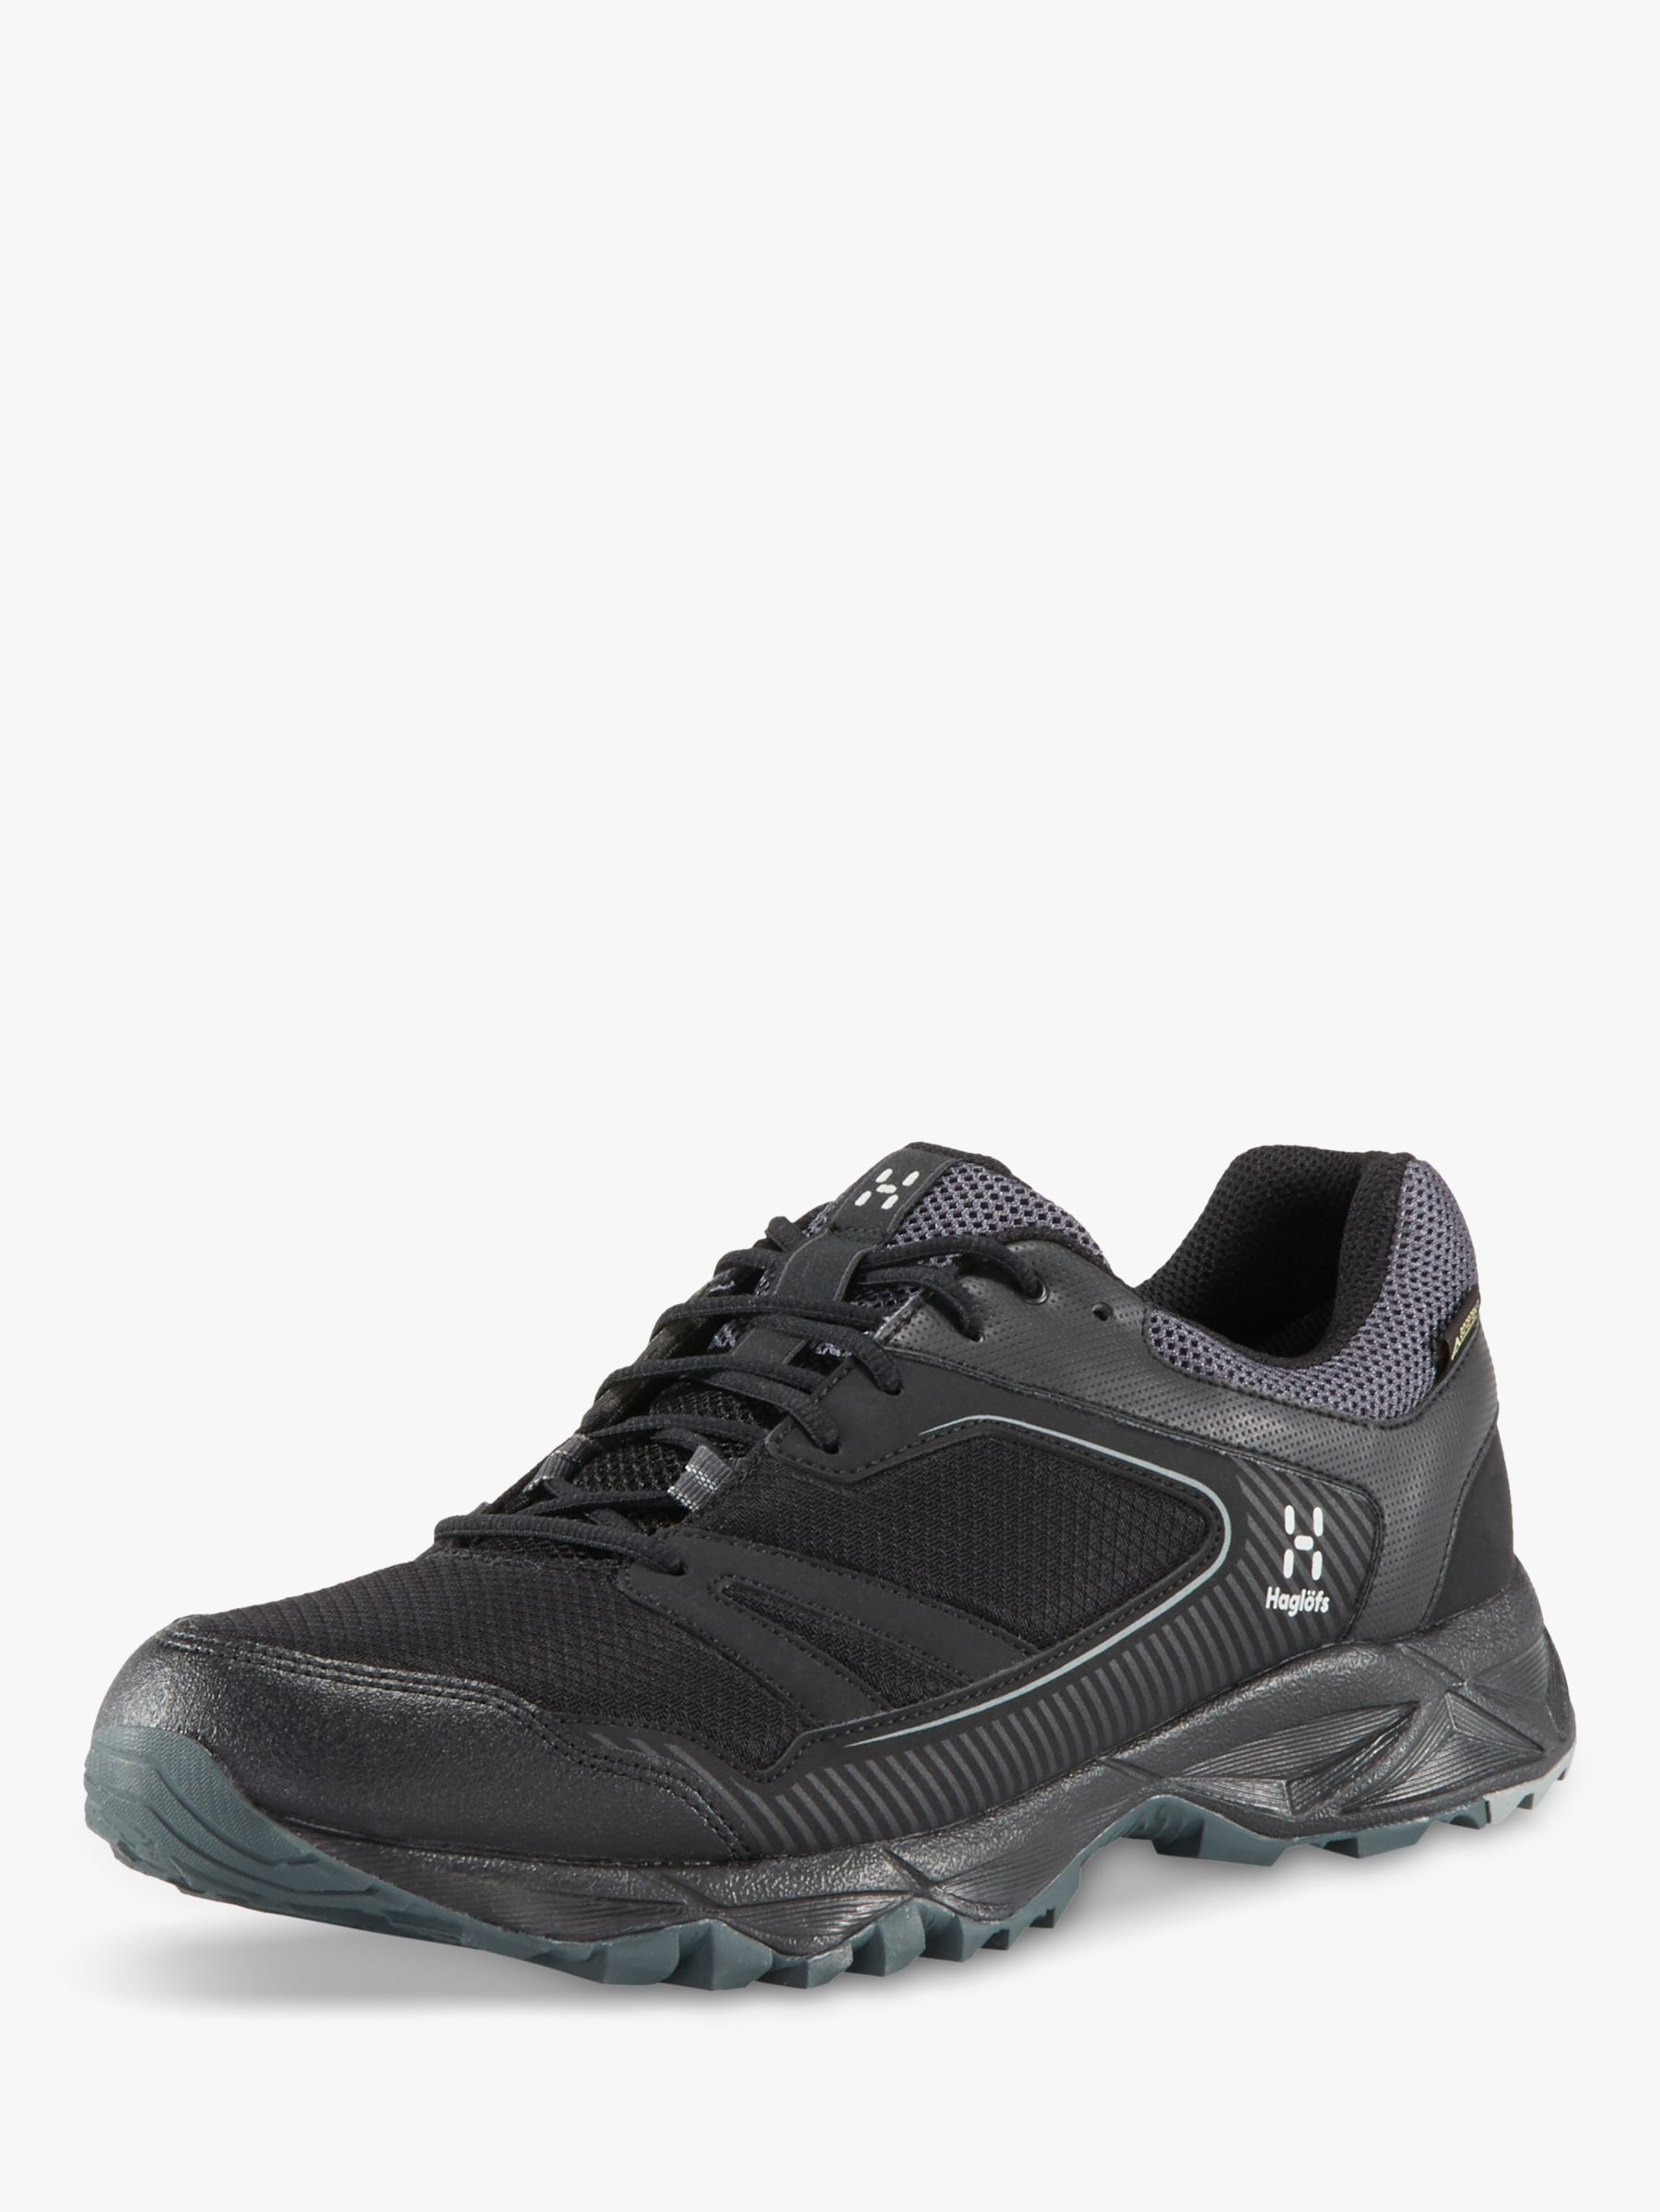 Waterproof Gore-Tex Walking Shoes 